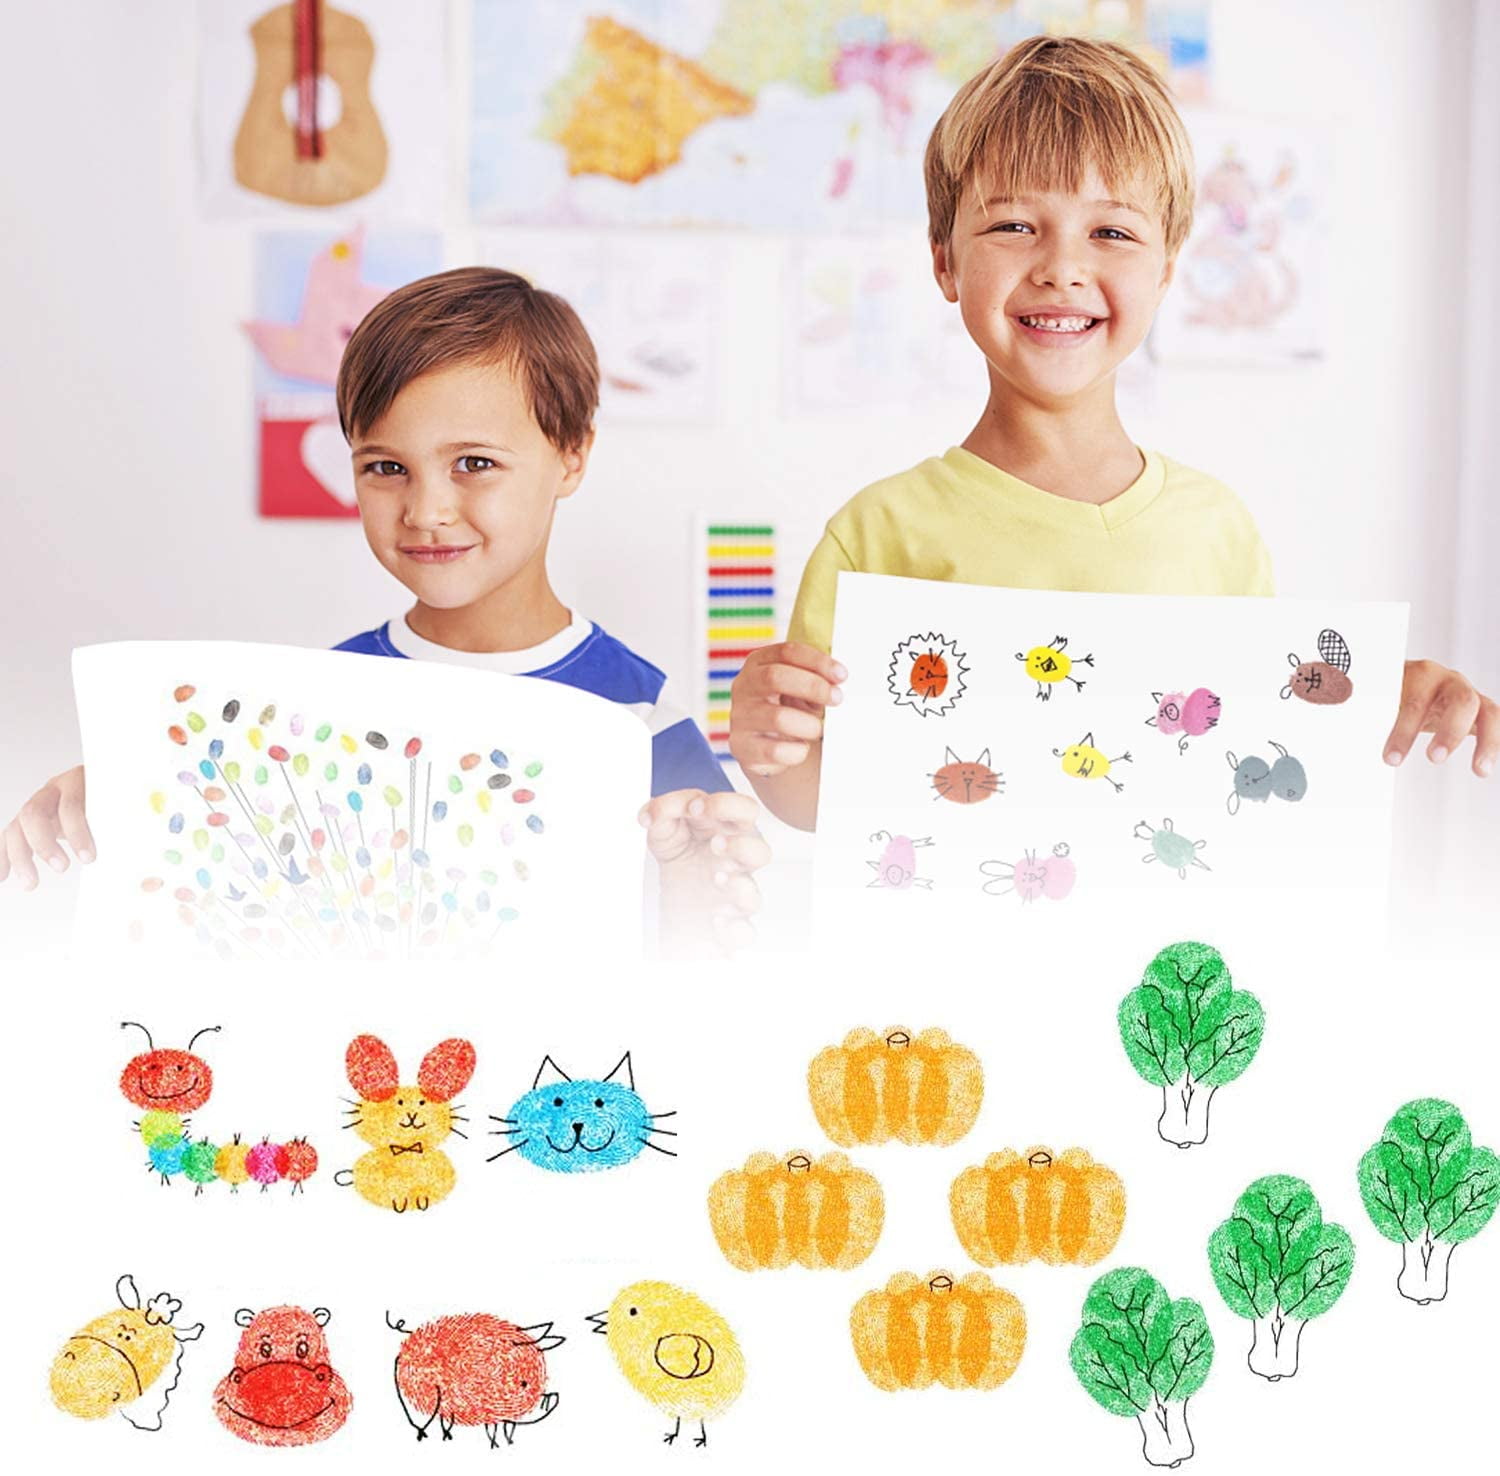 ink pad for fingerprints 20 Stamping Platform for Crafting kids painting